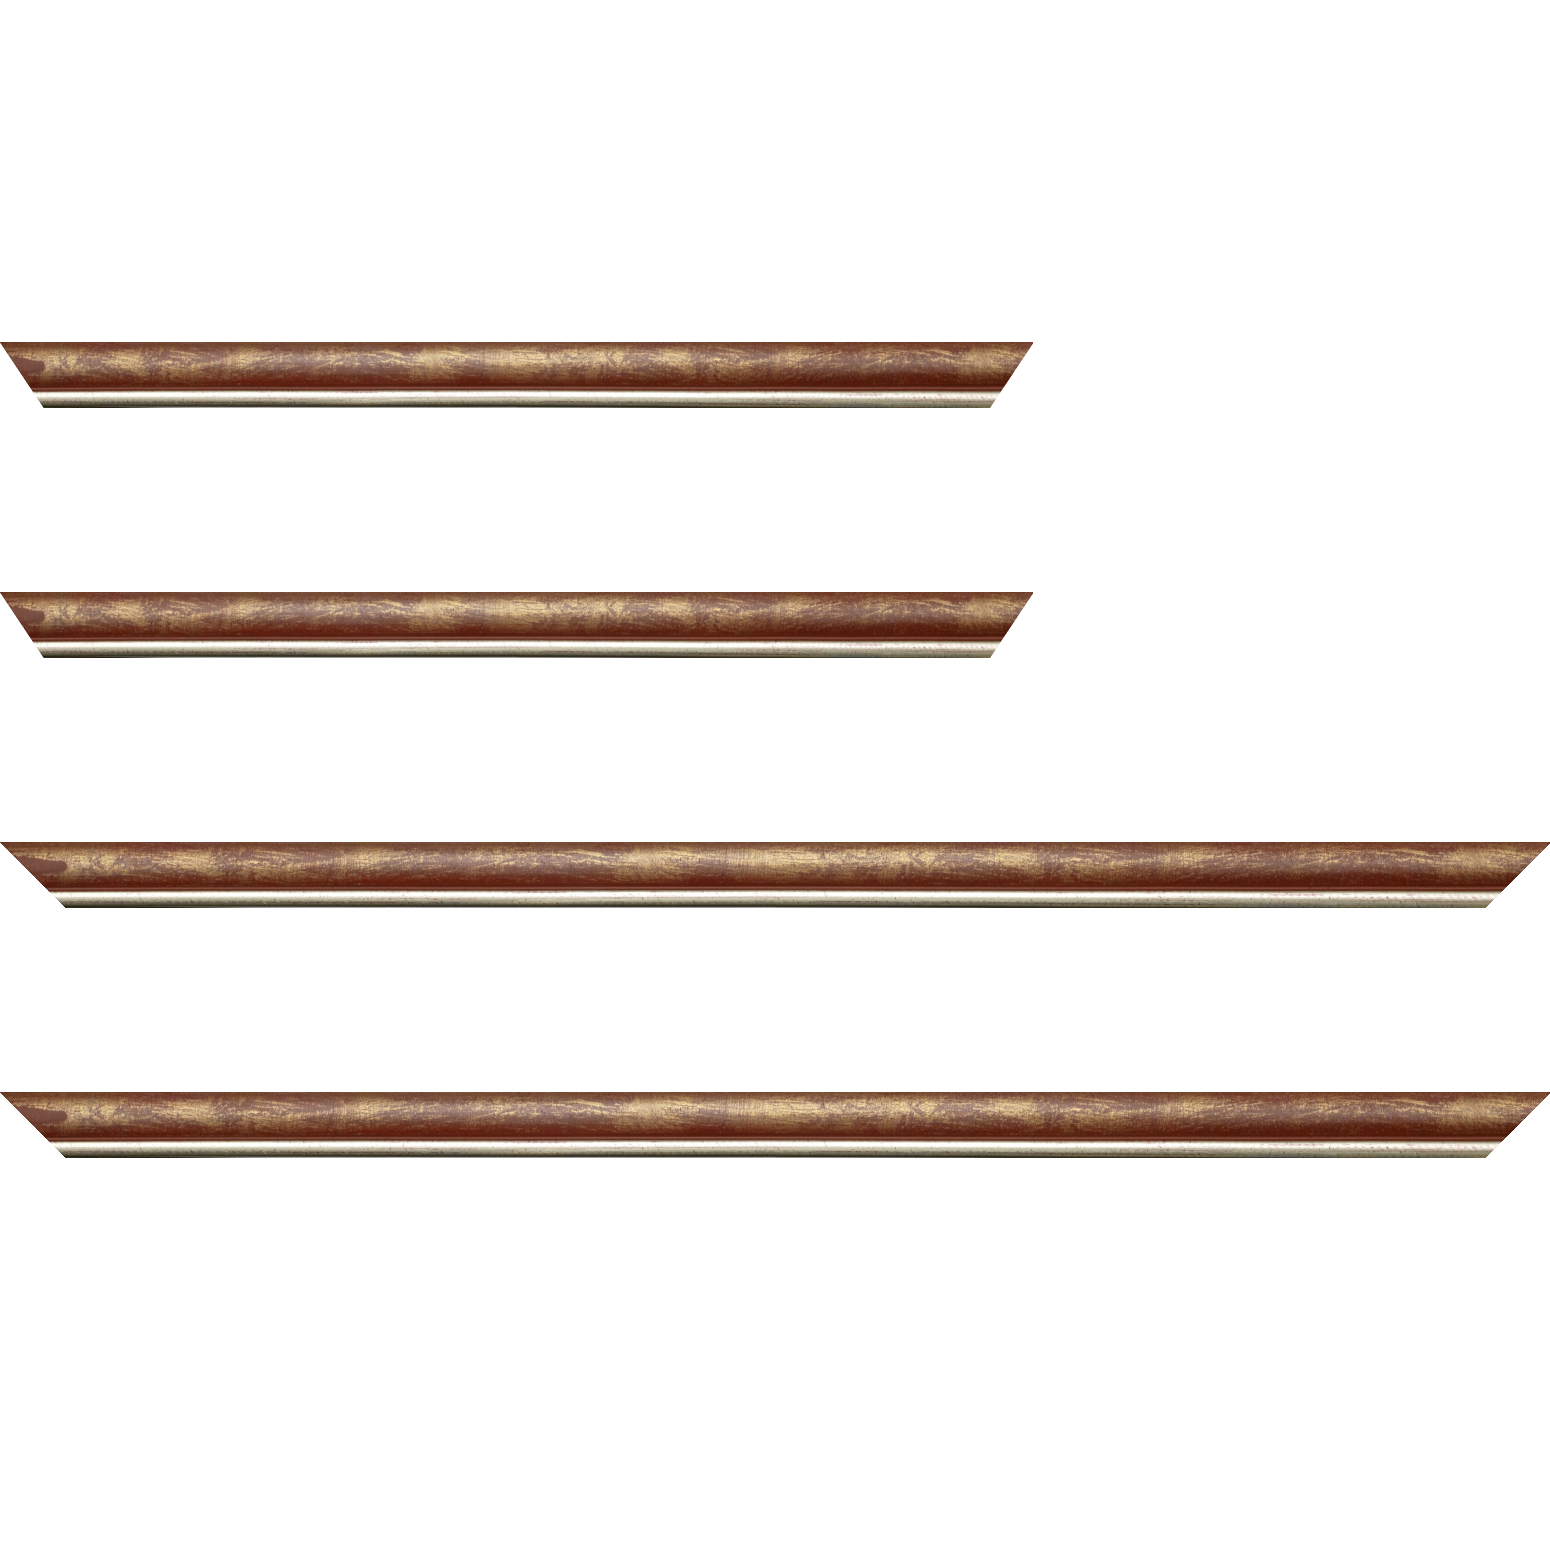 Baguette bois profil arrondi largeur 2.1cm  couleur bordeaux fond or filet argent chaud